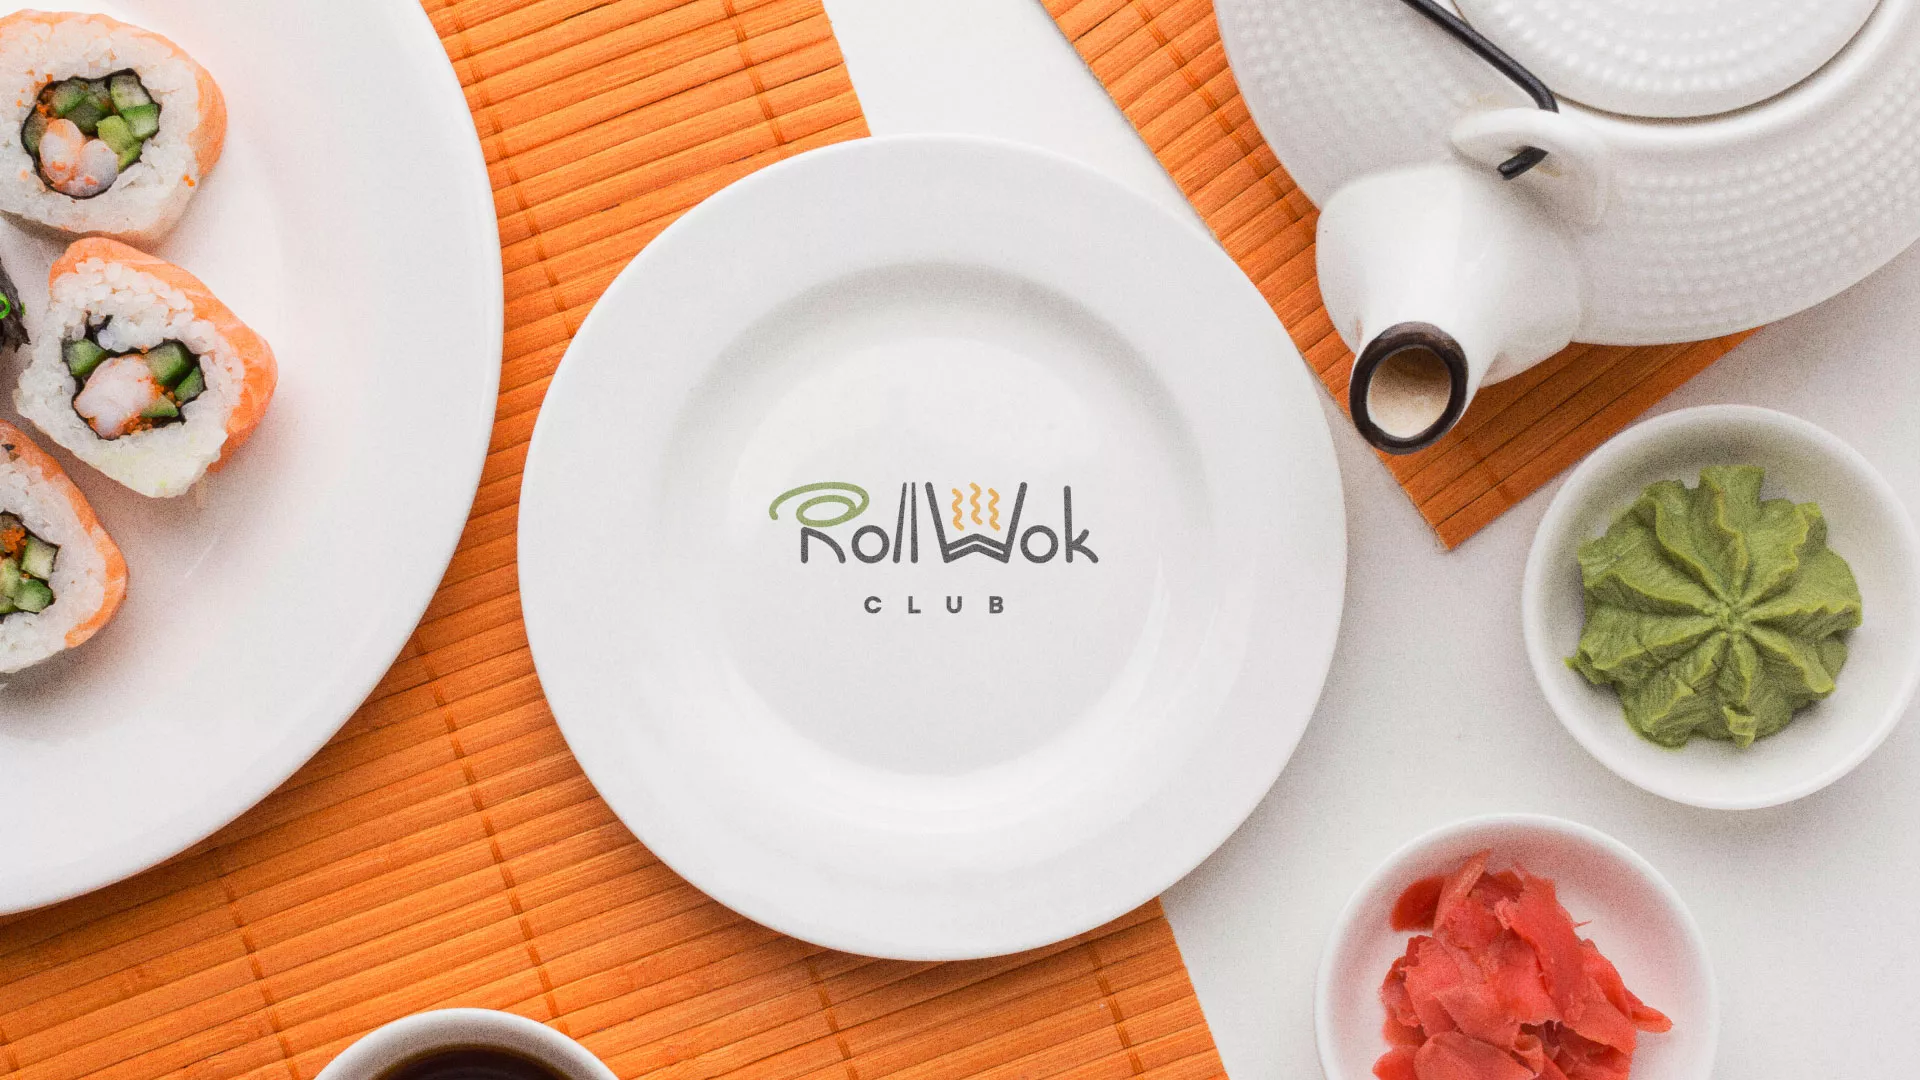 Разработка логотипа и фирменного стиля суши-бара «Roll Wok Club» в Богородицке